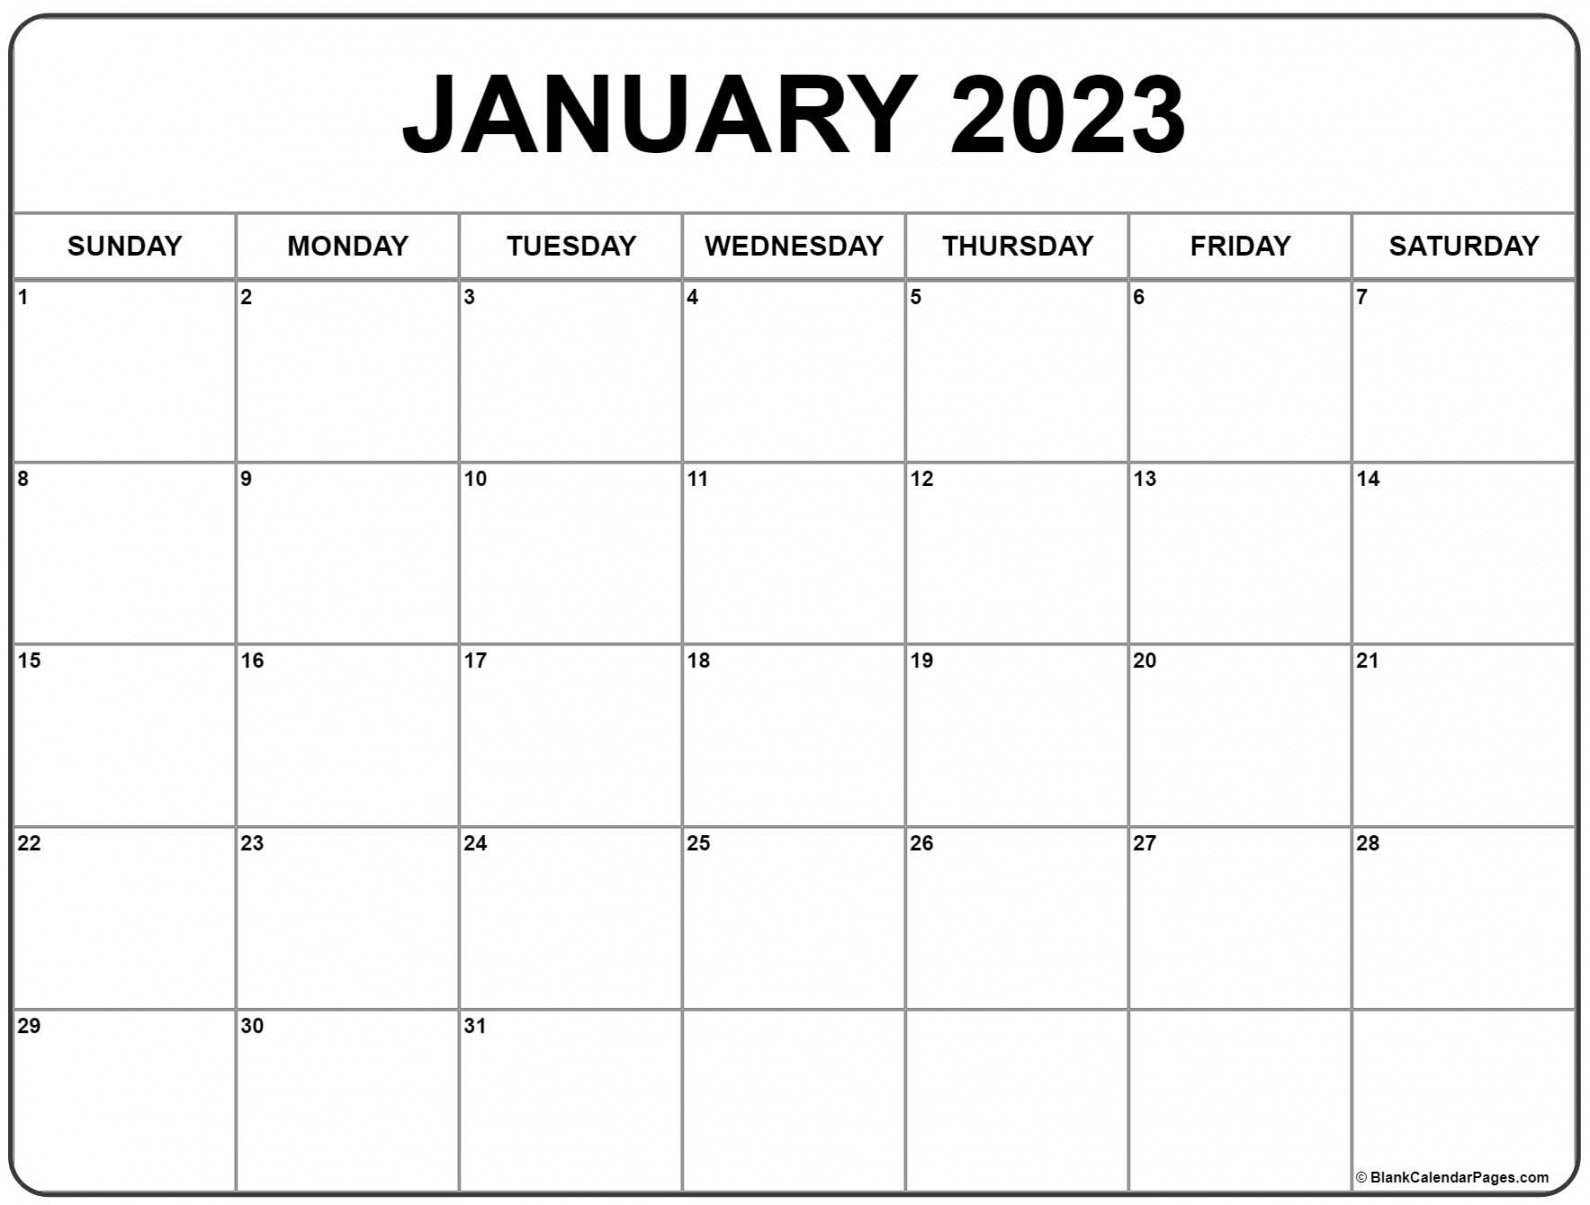 Free Printable January Calendar 2023 - Printable - January  calendar  free printable calendar